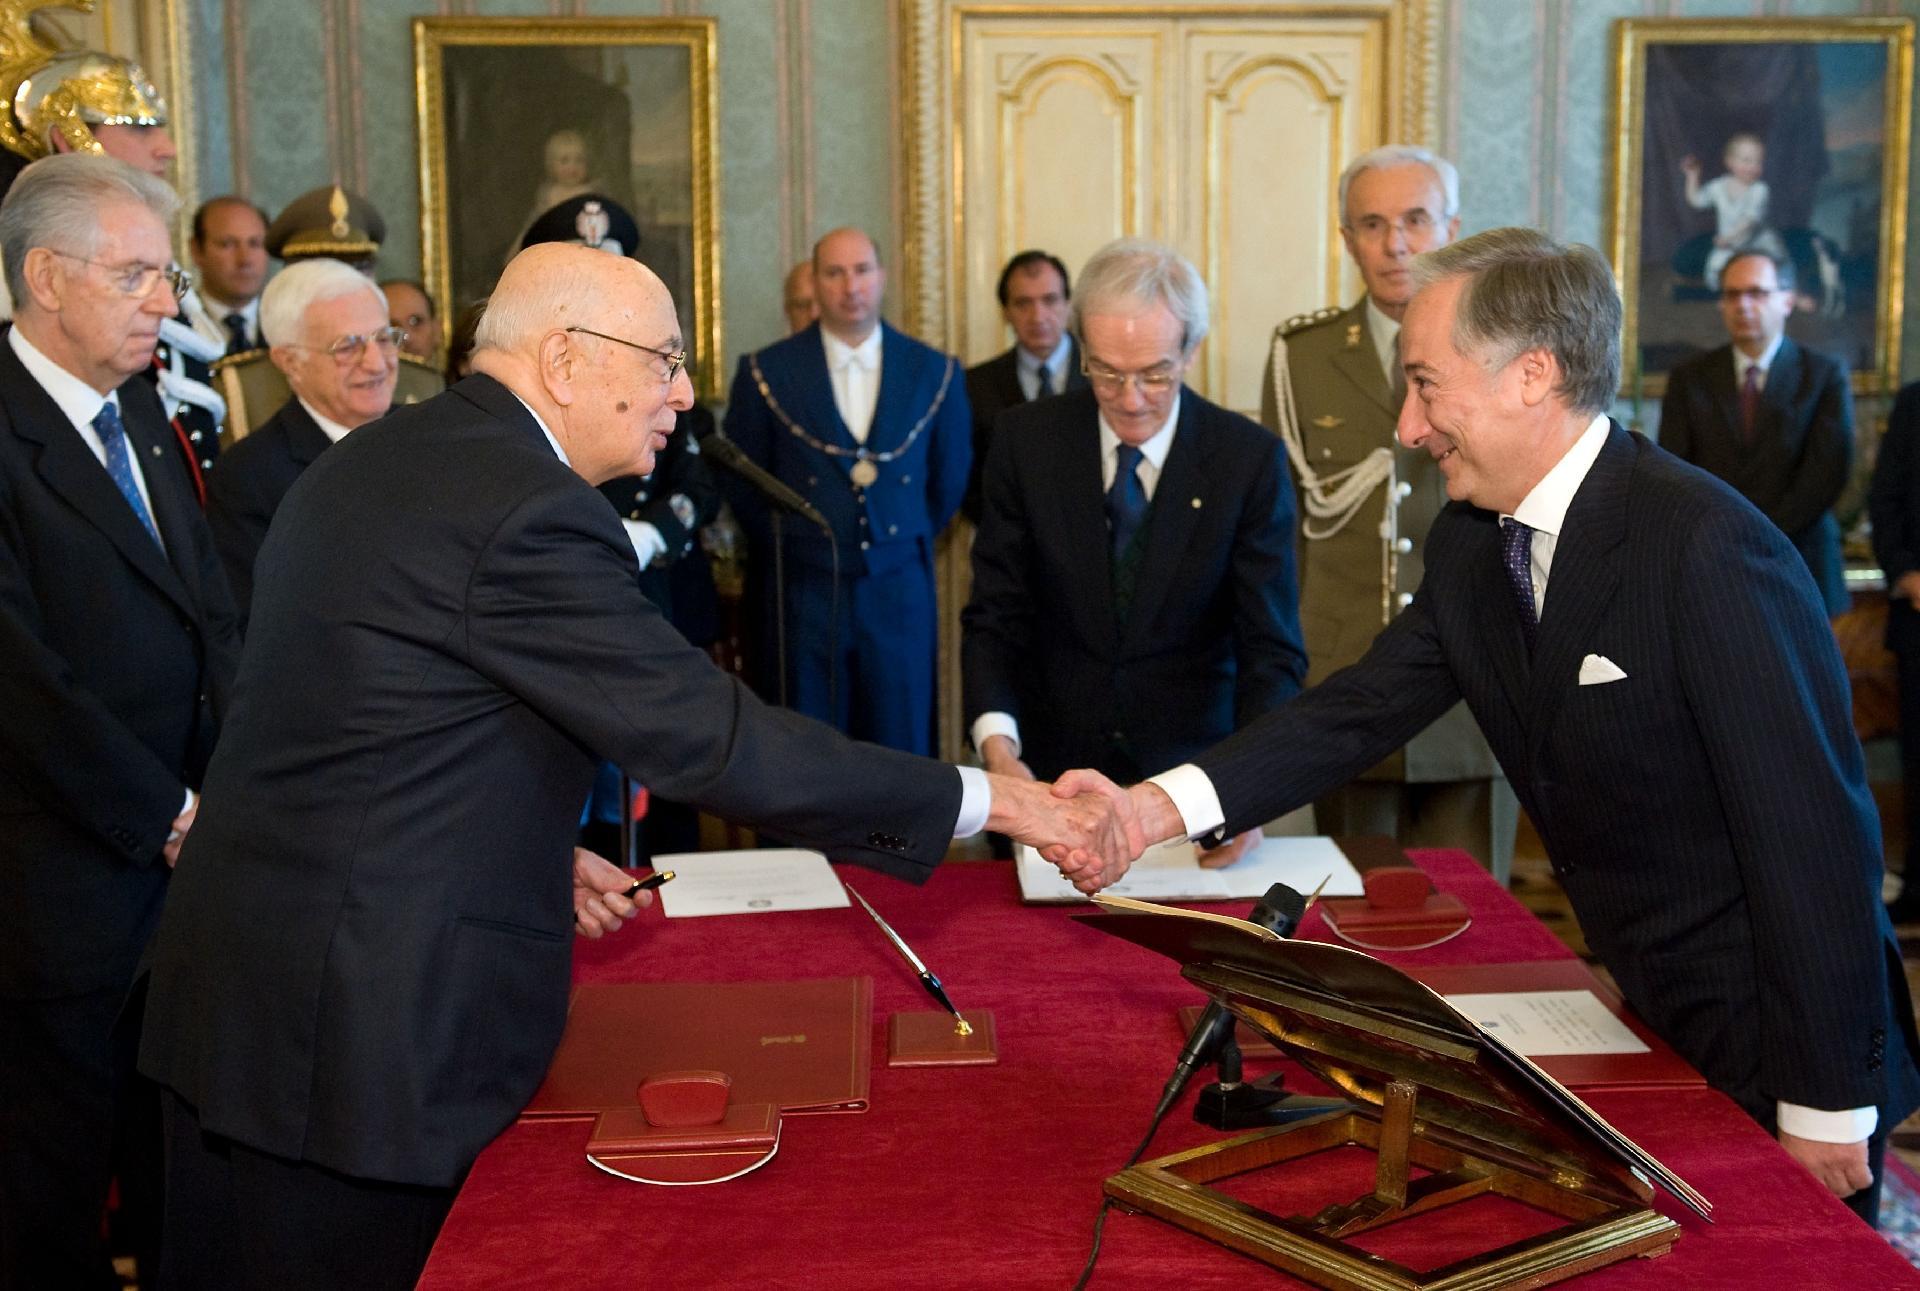 Il Presidente Giorgio Napolitano con il Ministro senza portafoglio Filippo Patroni Griffi, al termine della cerimonia di giuramento